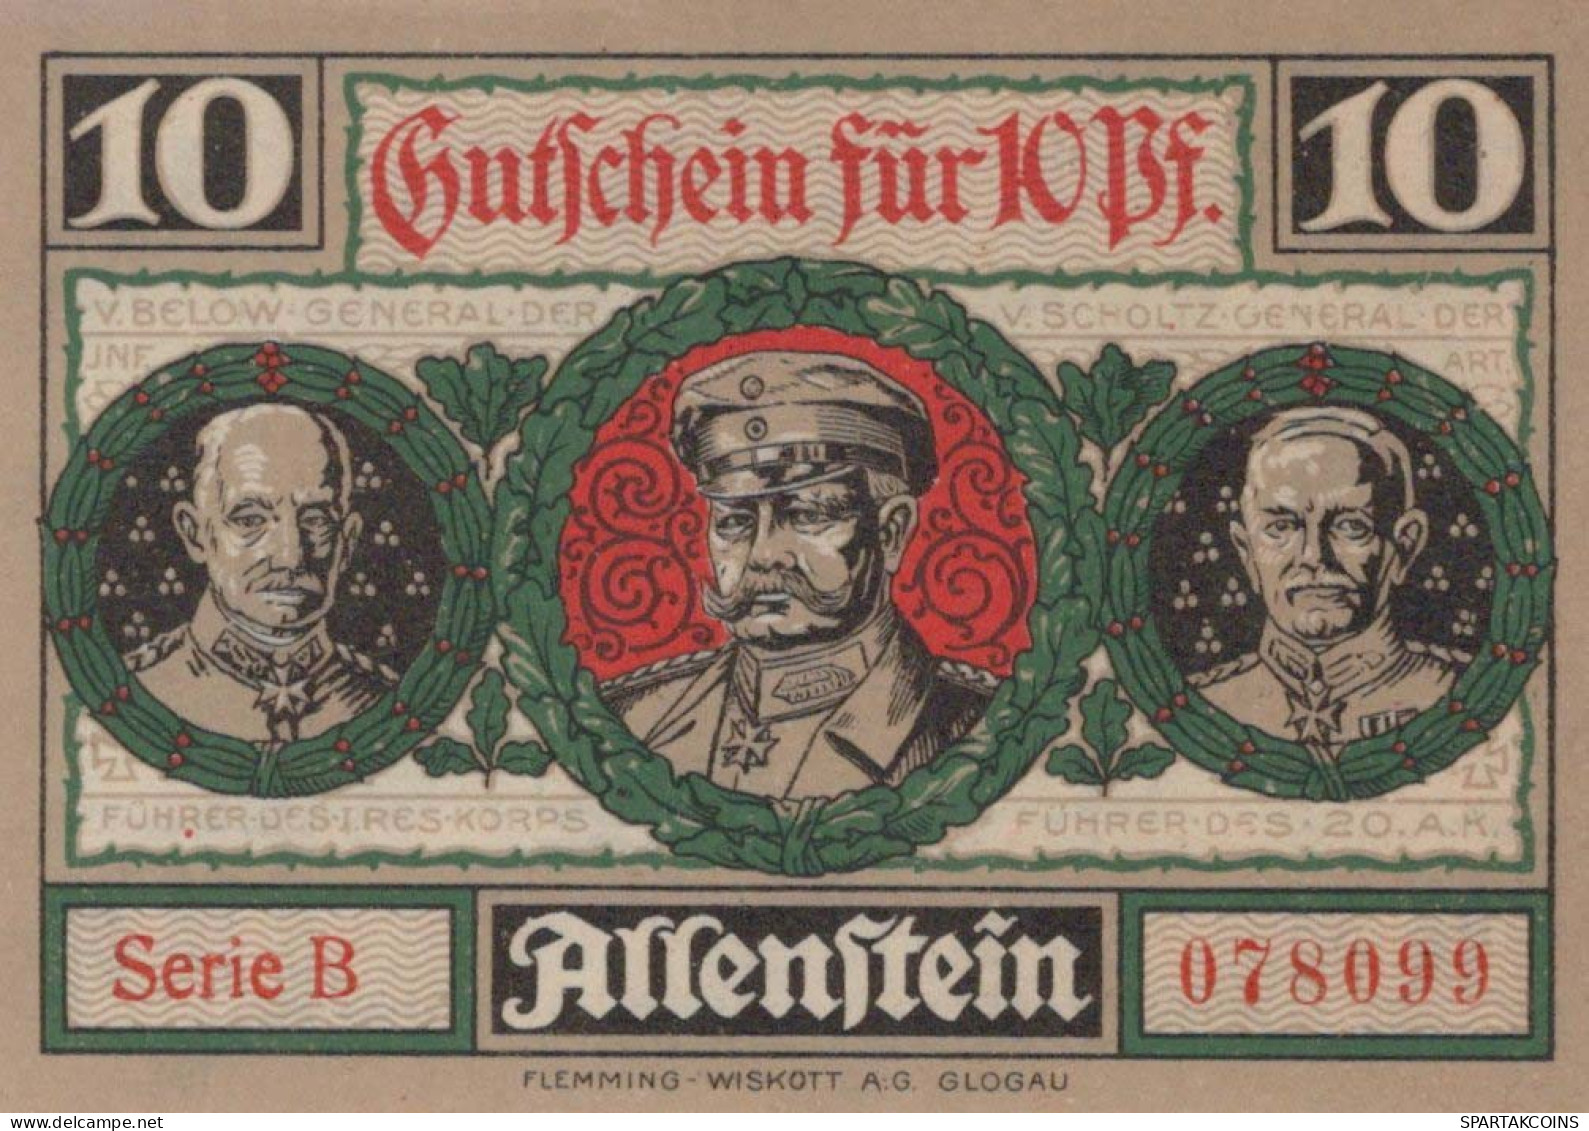 10 PFENNIG 1921 Stadt ALLENSTEIN East PRUSSLAND UNC DEUTSCHLAND Notgeld #PH134 - [11] Local Banknote Issues